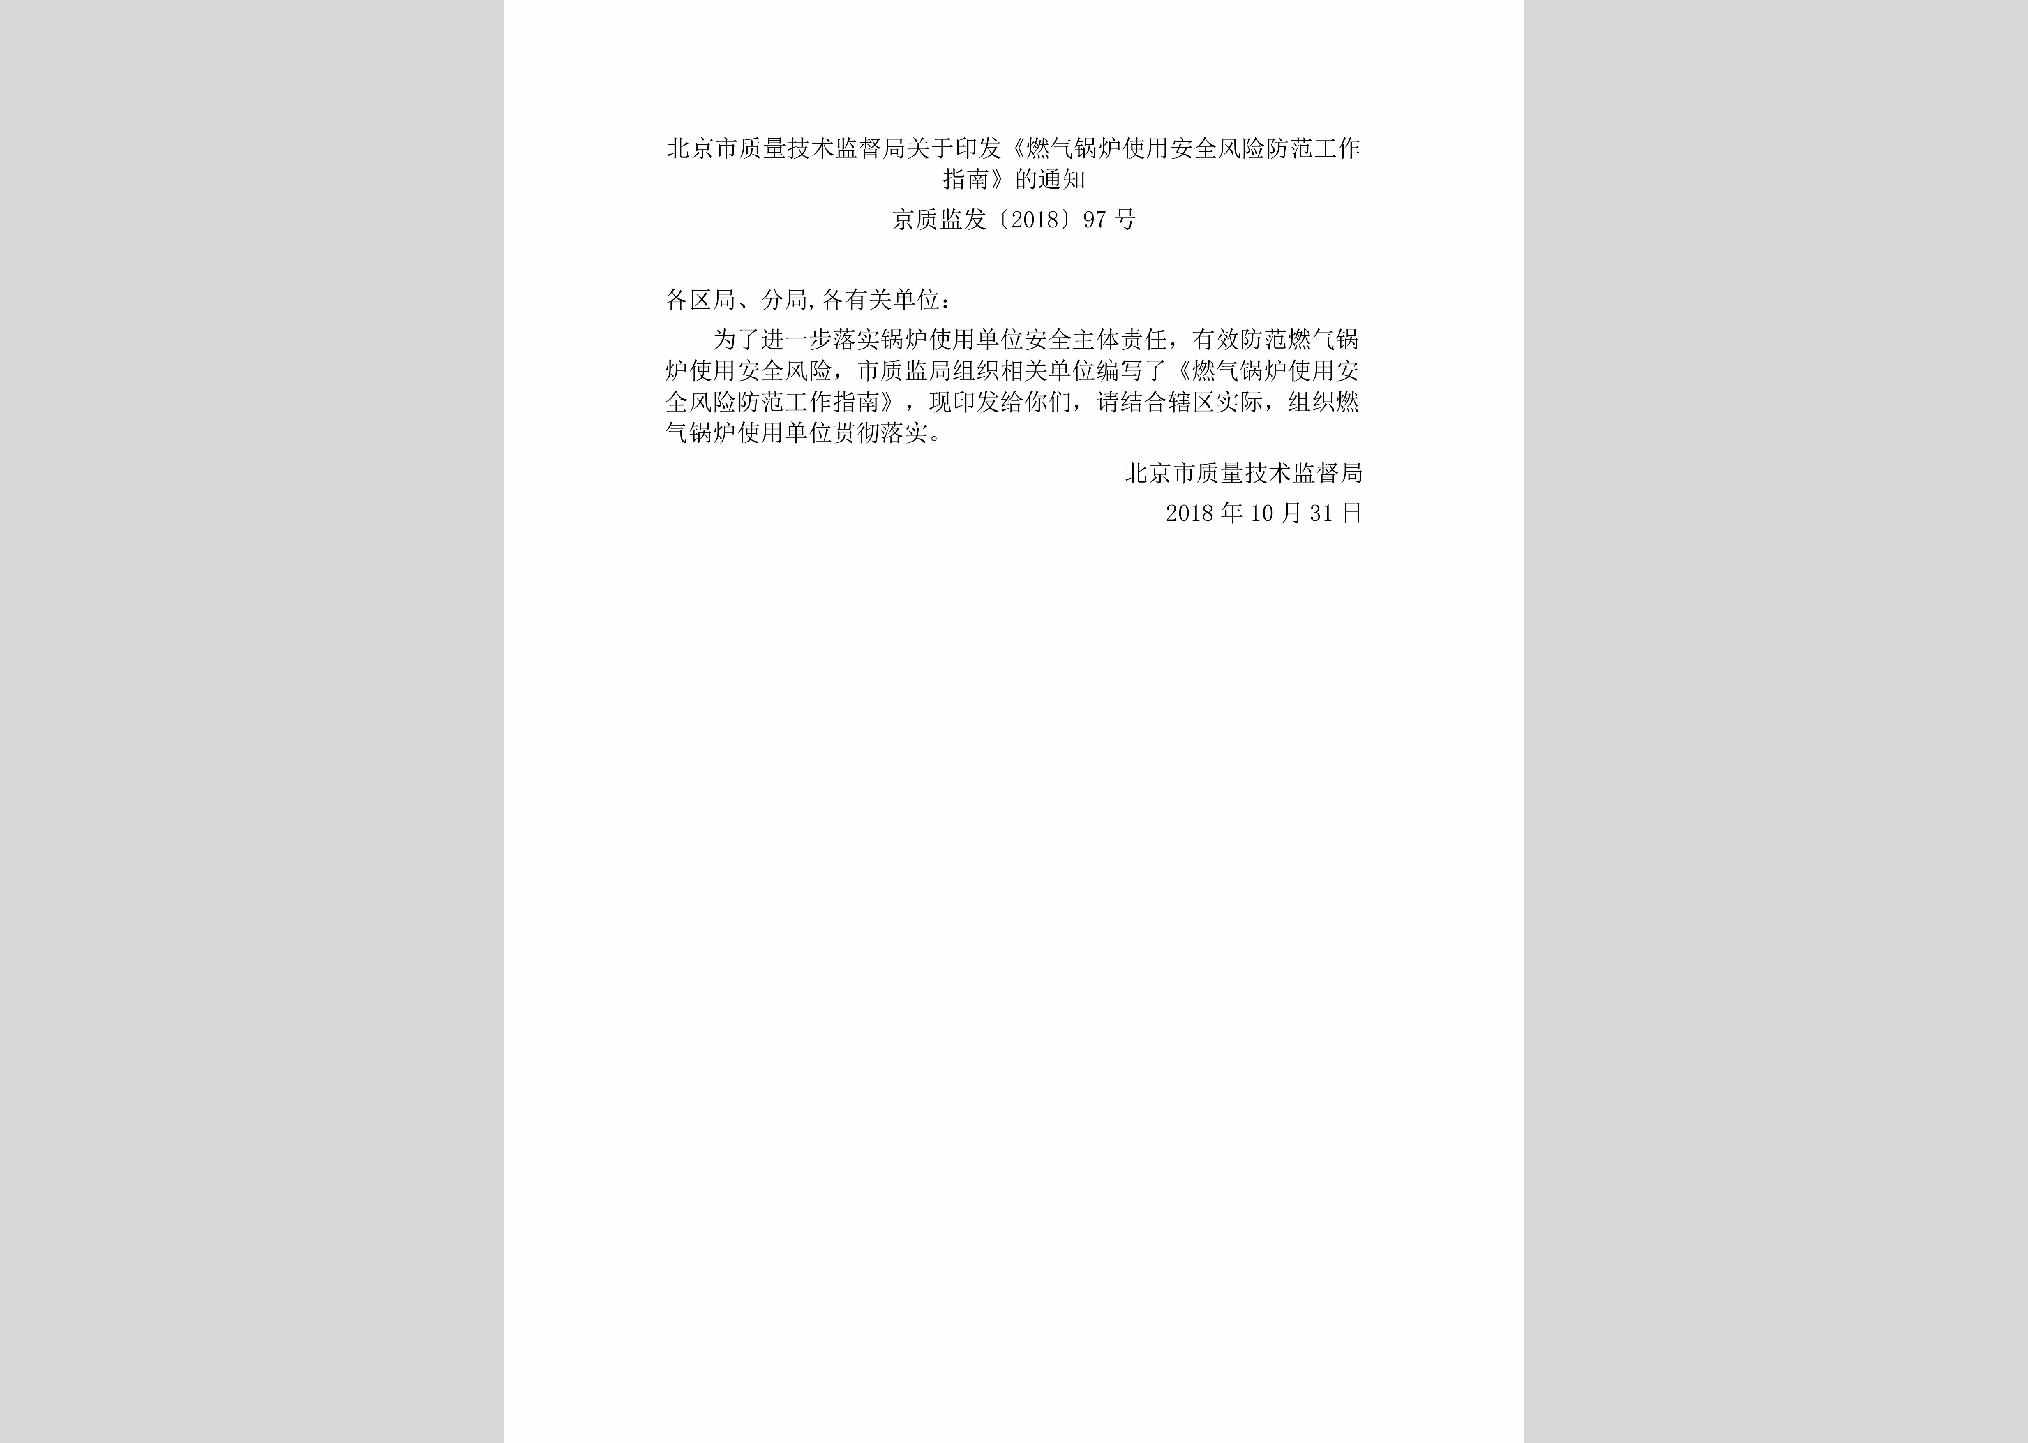 京质监发[2018]97号：北京市质量技术监督局关于印发《燃气锅炉使用安全风险防范工作指南》的通知